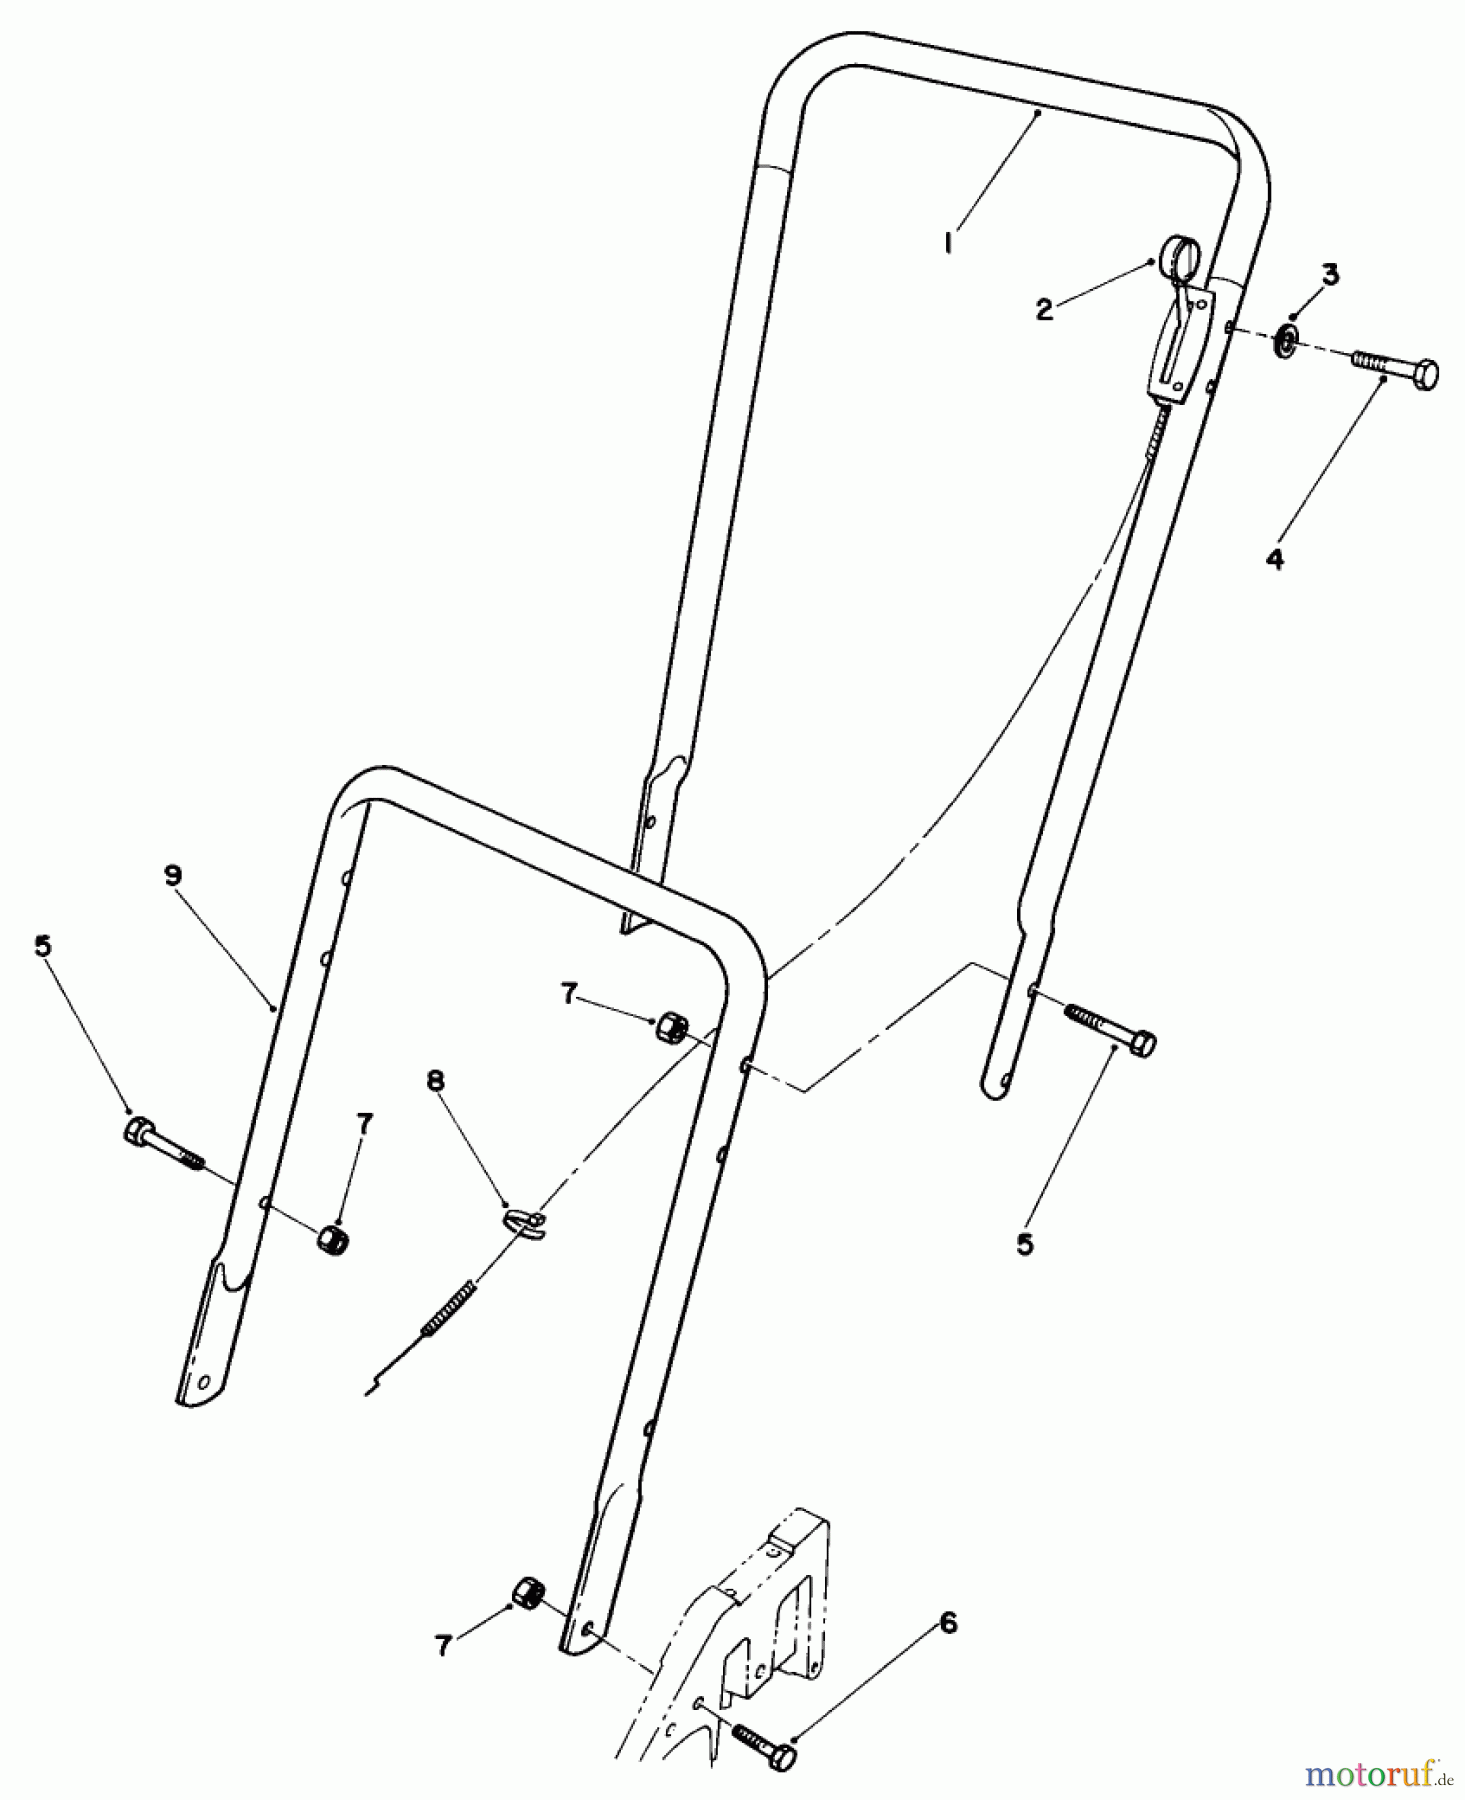  Toro Neu Mowers, Walk-Behind Seite 2 22025 - Toro Lawnmower, 1988 (8000001-8999999) HANDLE ASSEMBLY